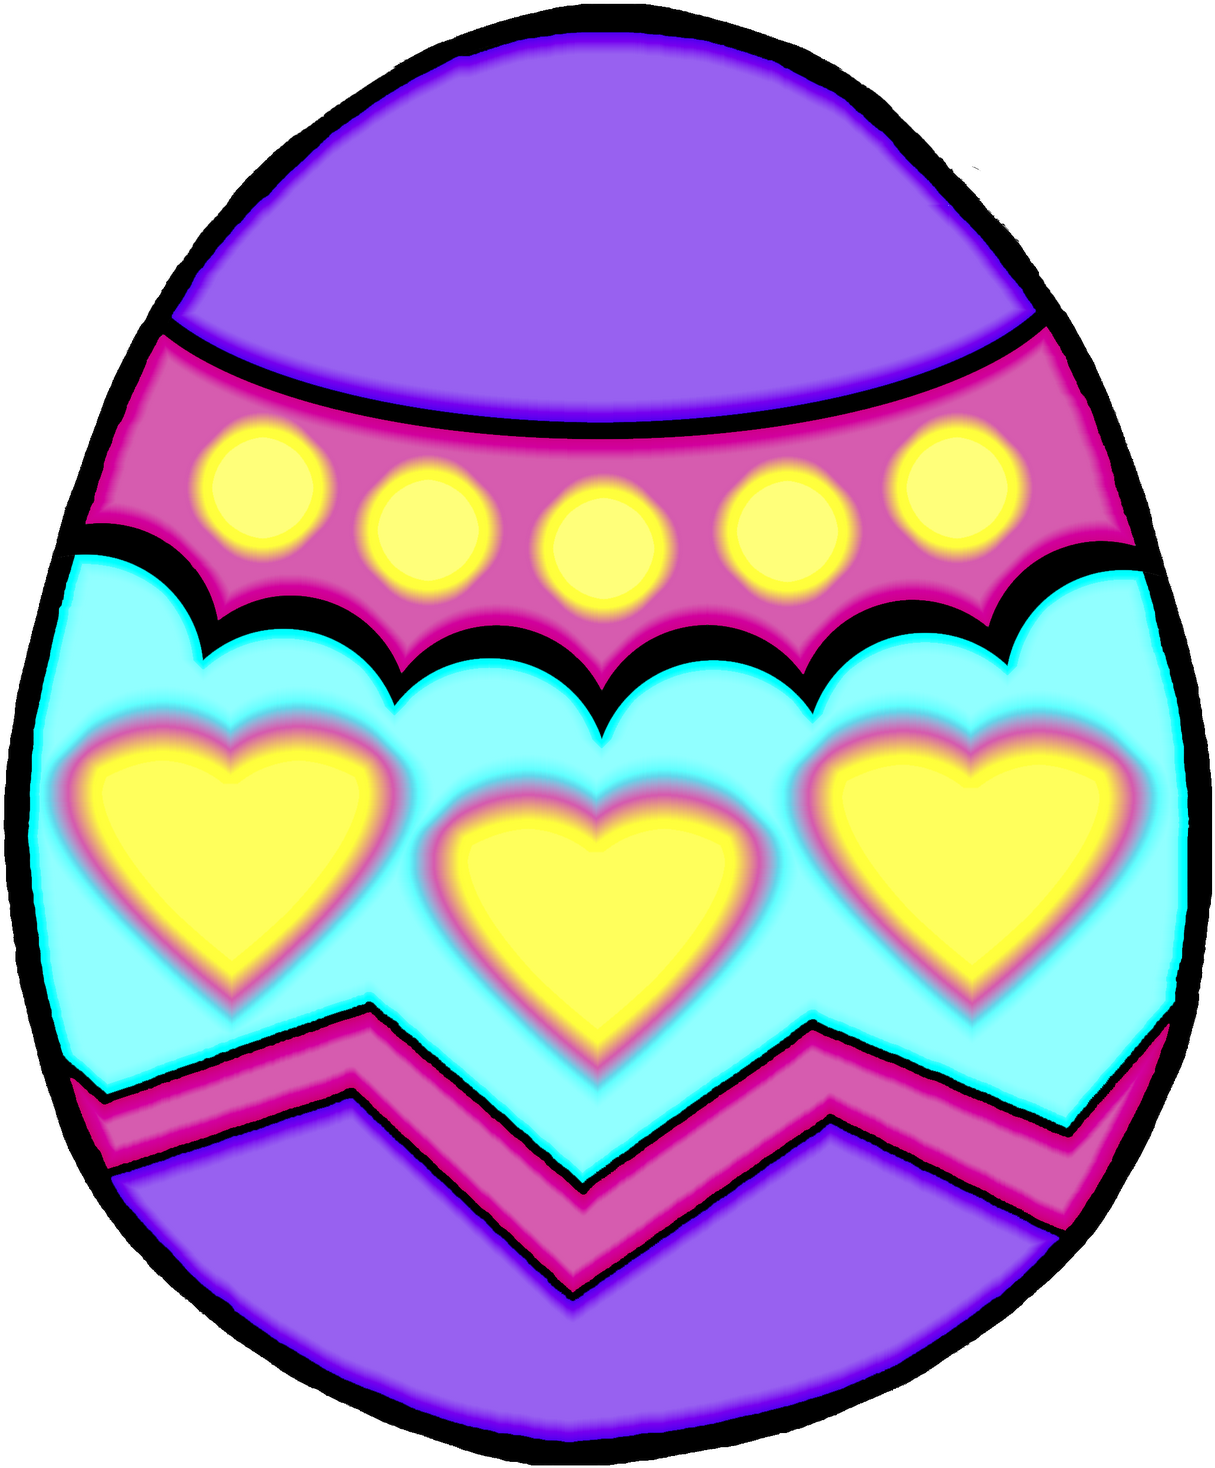 Easter Egg Clip Art - Easter Egg Image Clipart (1252x1600)